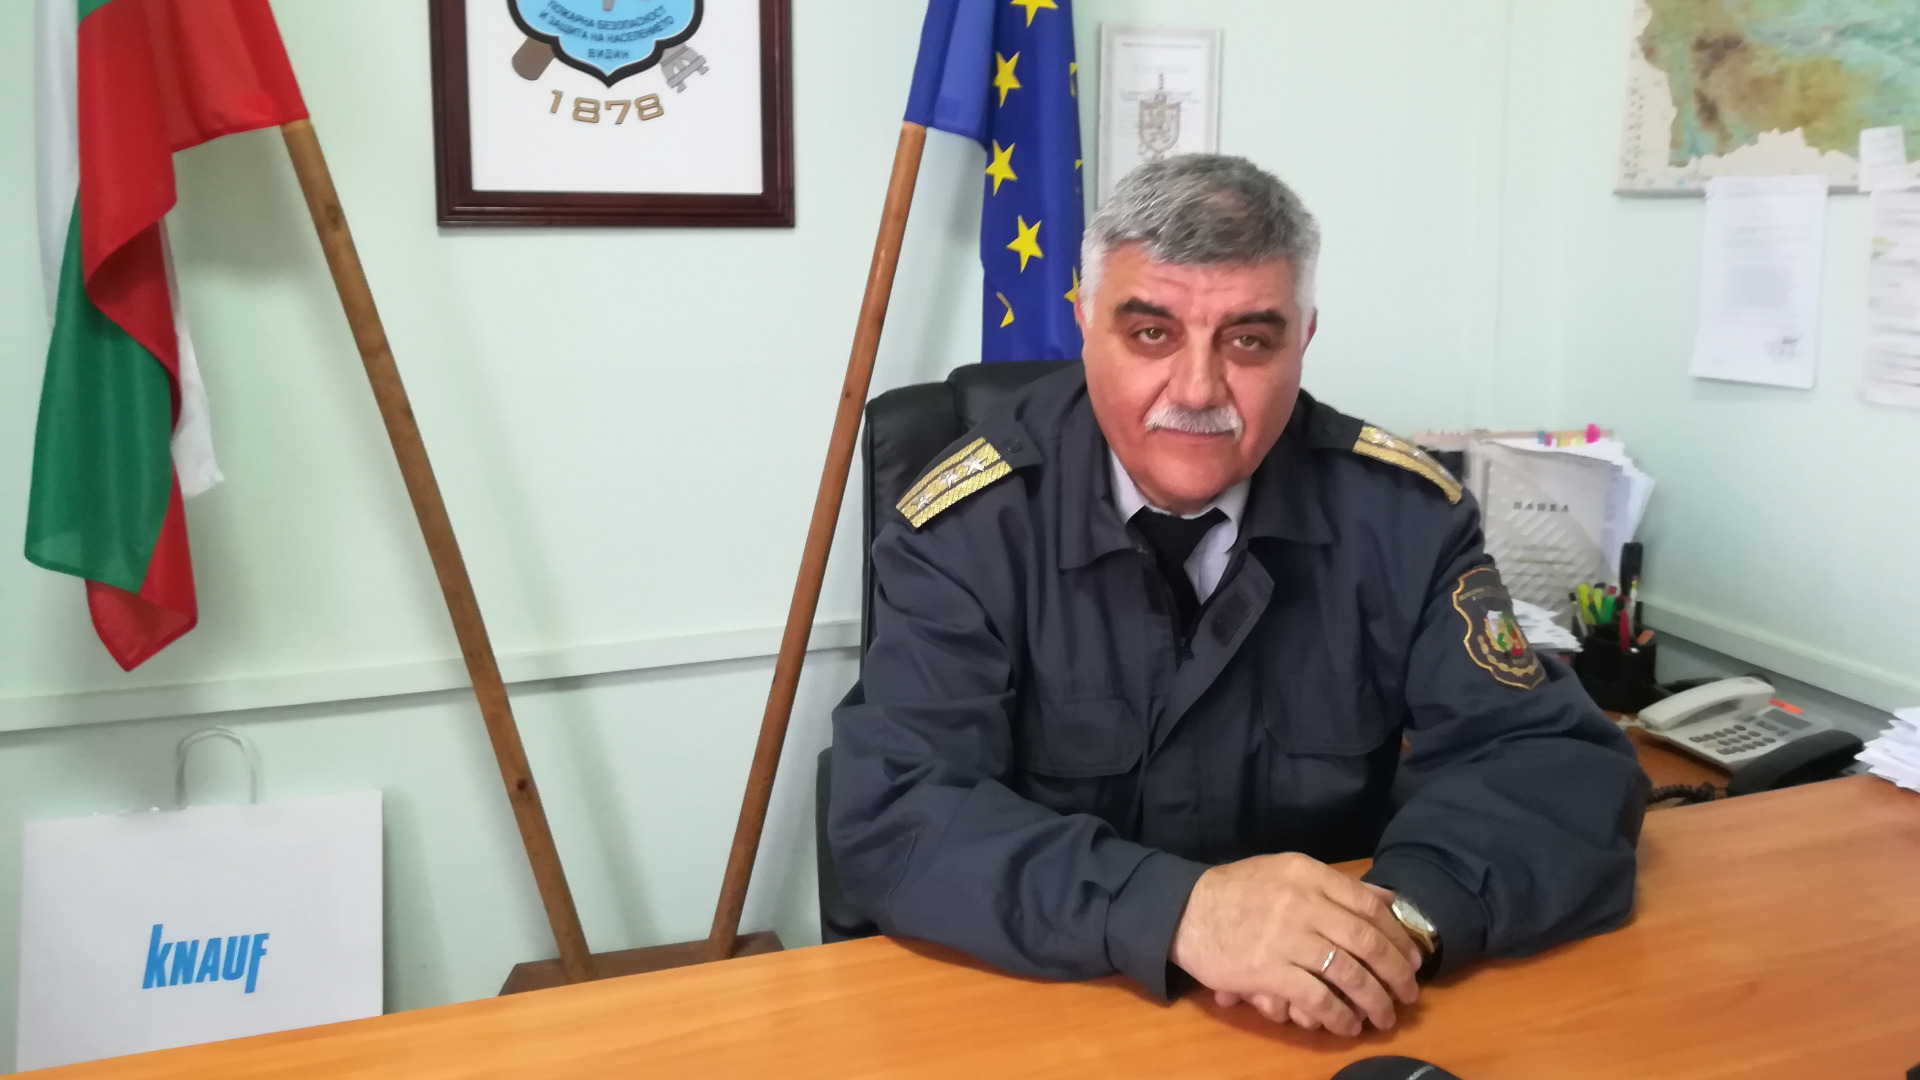 Комисар Станислав Генчев, директор на Регионална дирекция Пожарна безопасност и защита на населението-Видин. Снимка: Радио ВИДИН